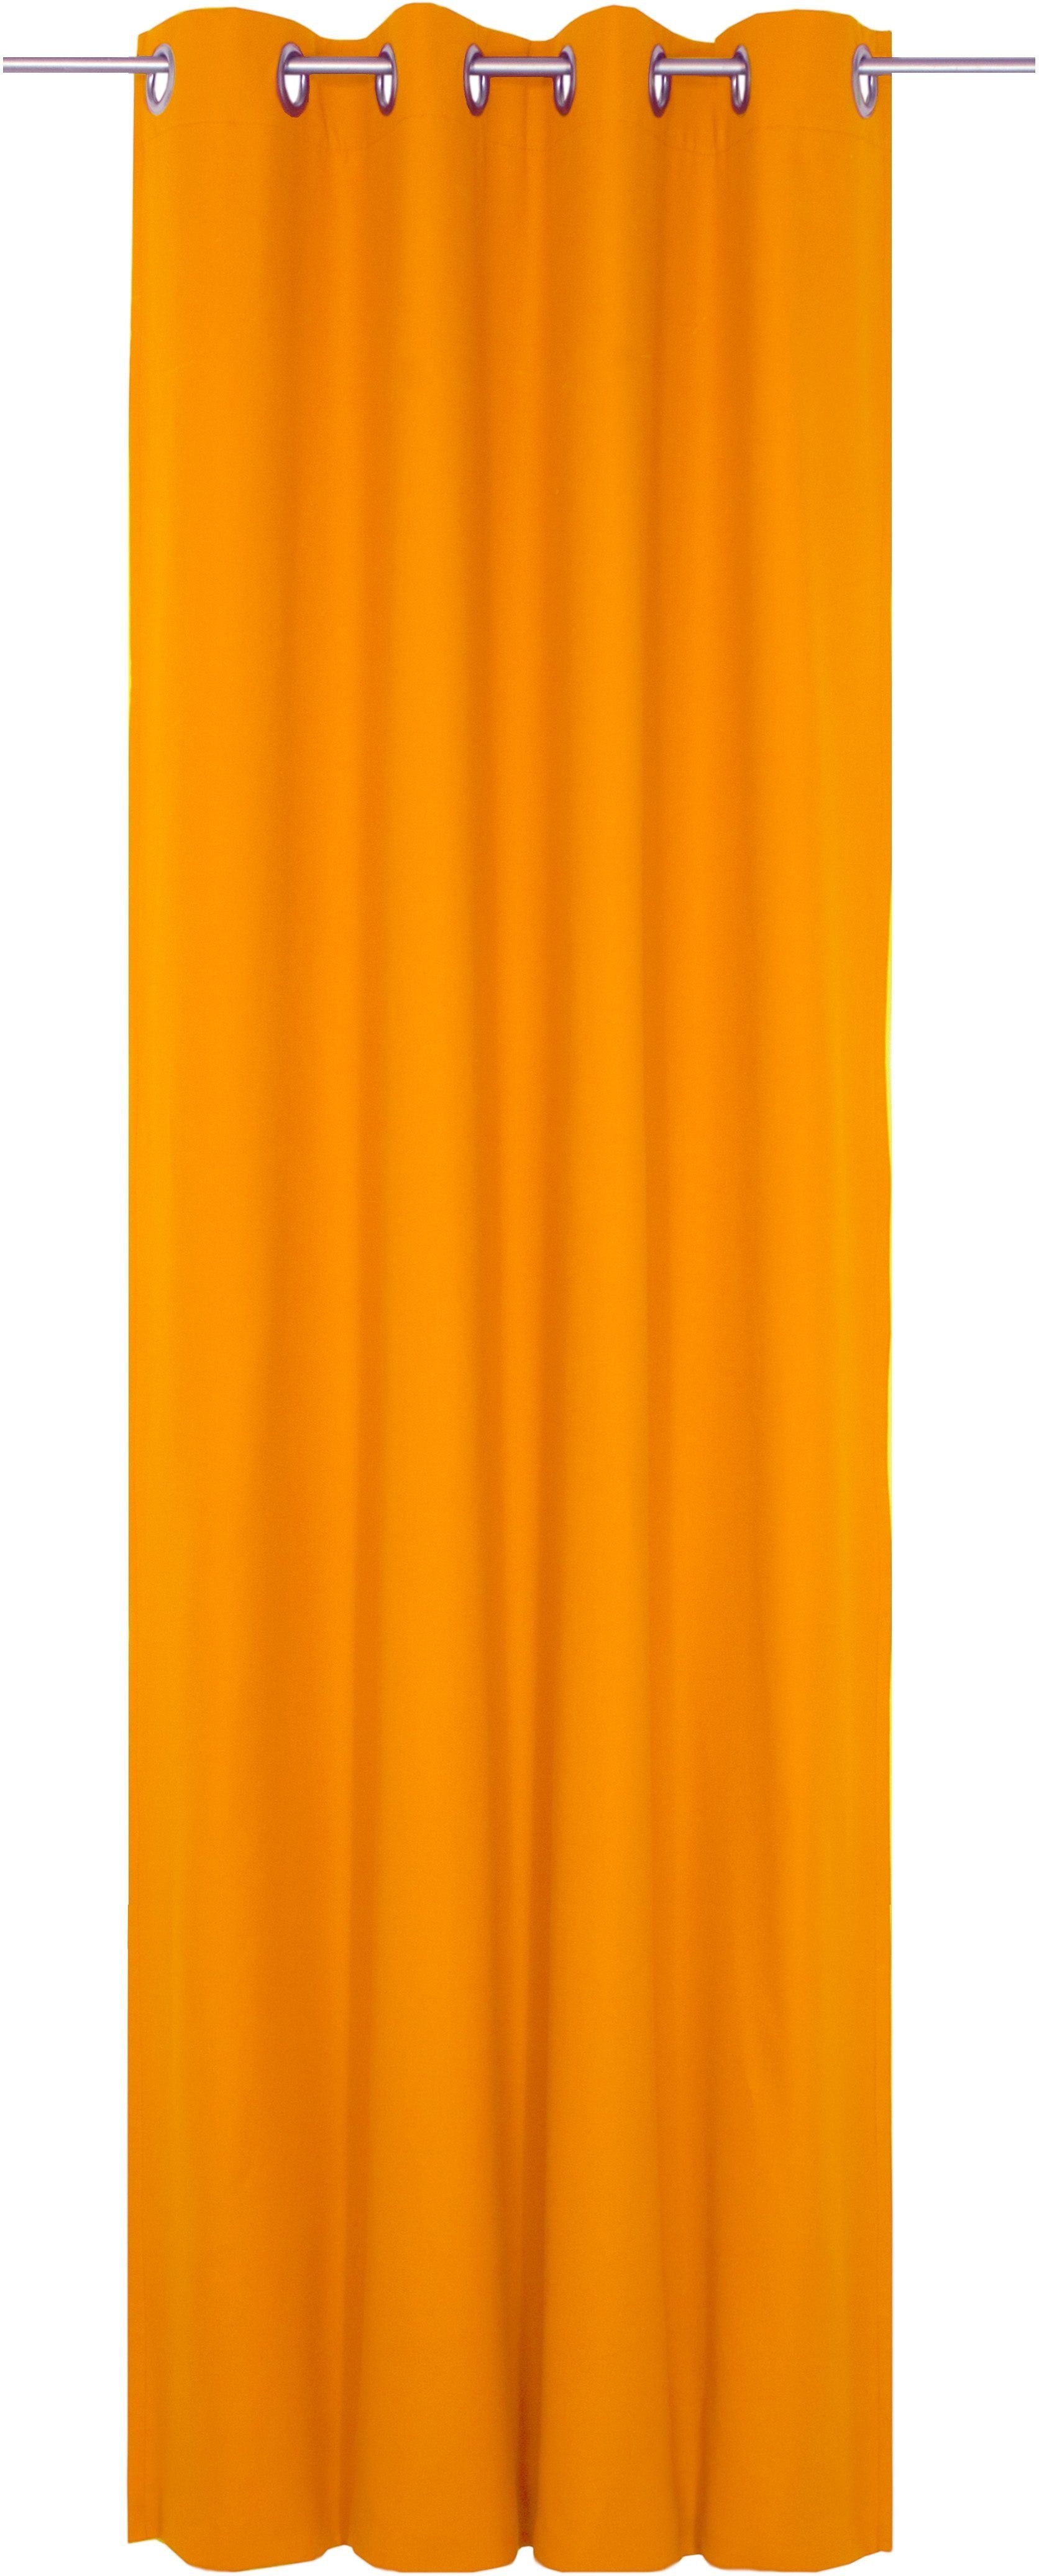 Orange Ösengardinen kaufen » Orangene Vorhänge mit Ösen | OTTO | Gardinenstores